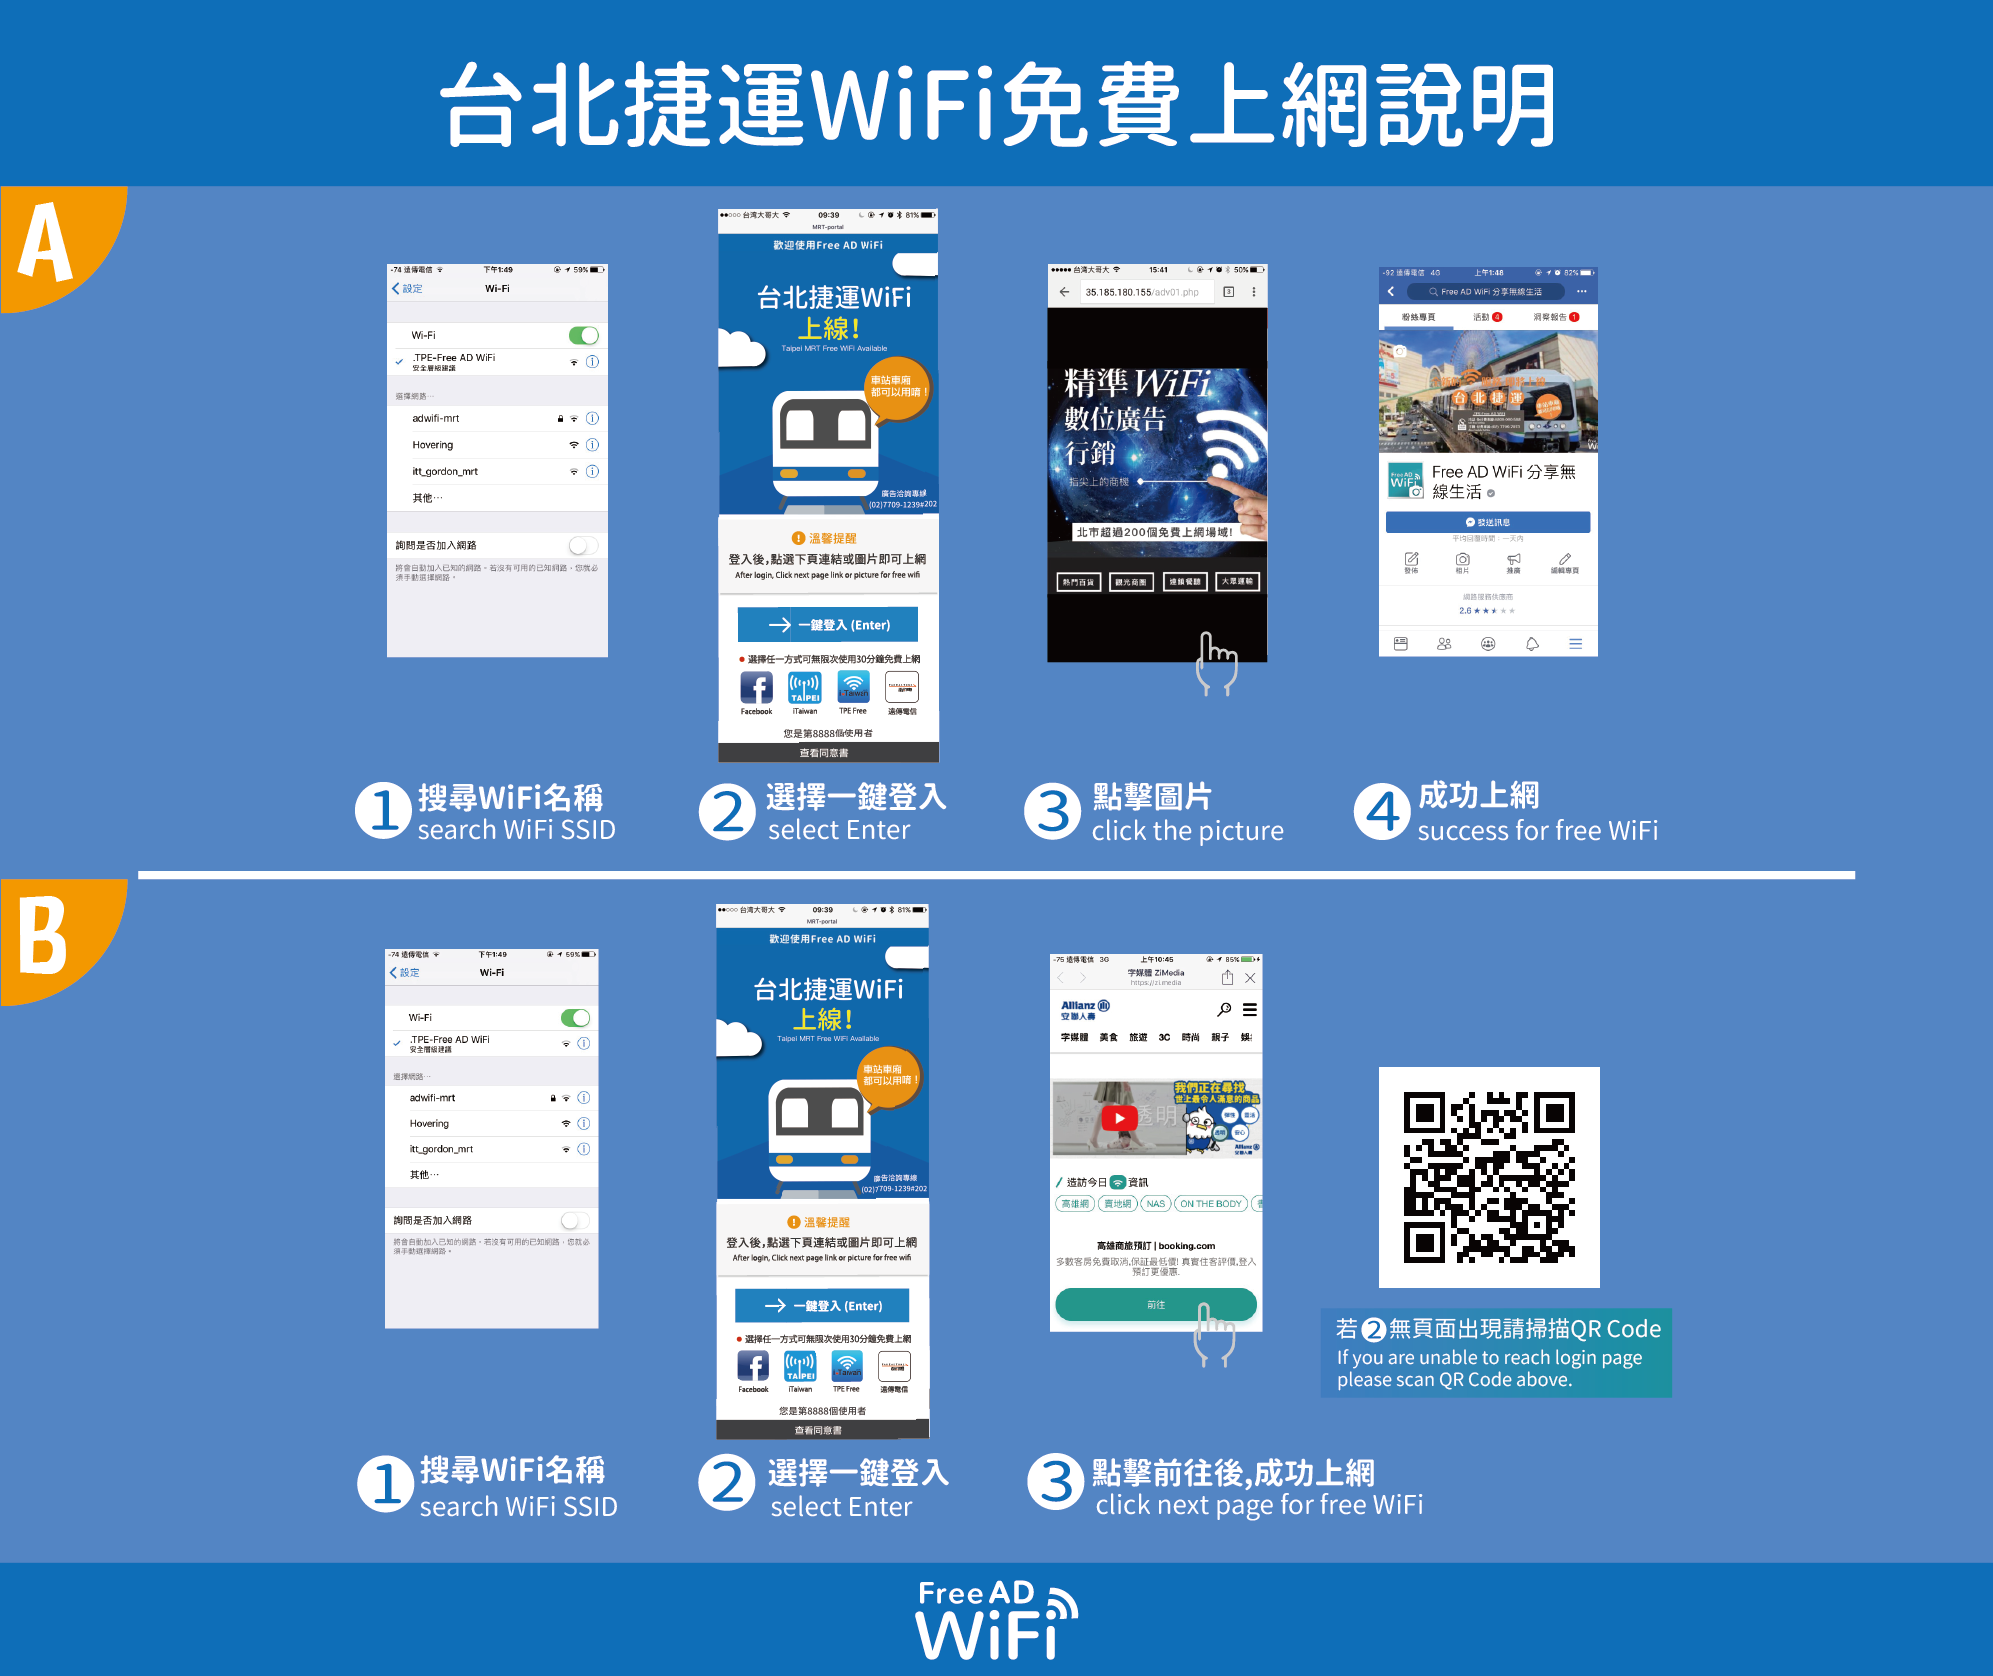 臺北捷運免費WiFi「 .TPE-Free AD WiFi 」自25日起停止服務 - 電腦王阿達